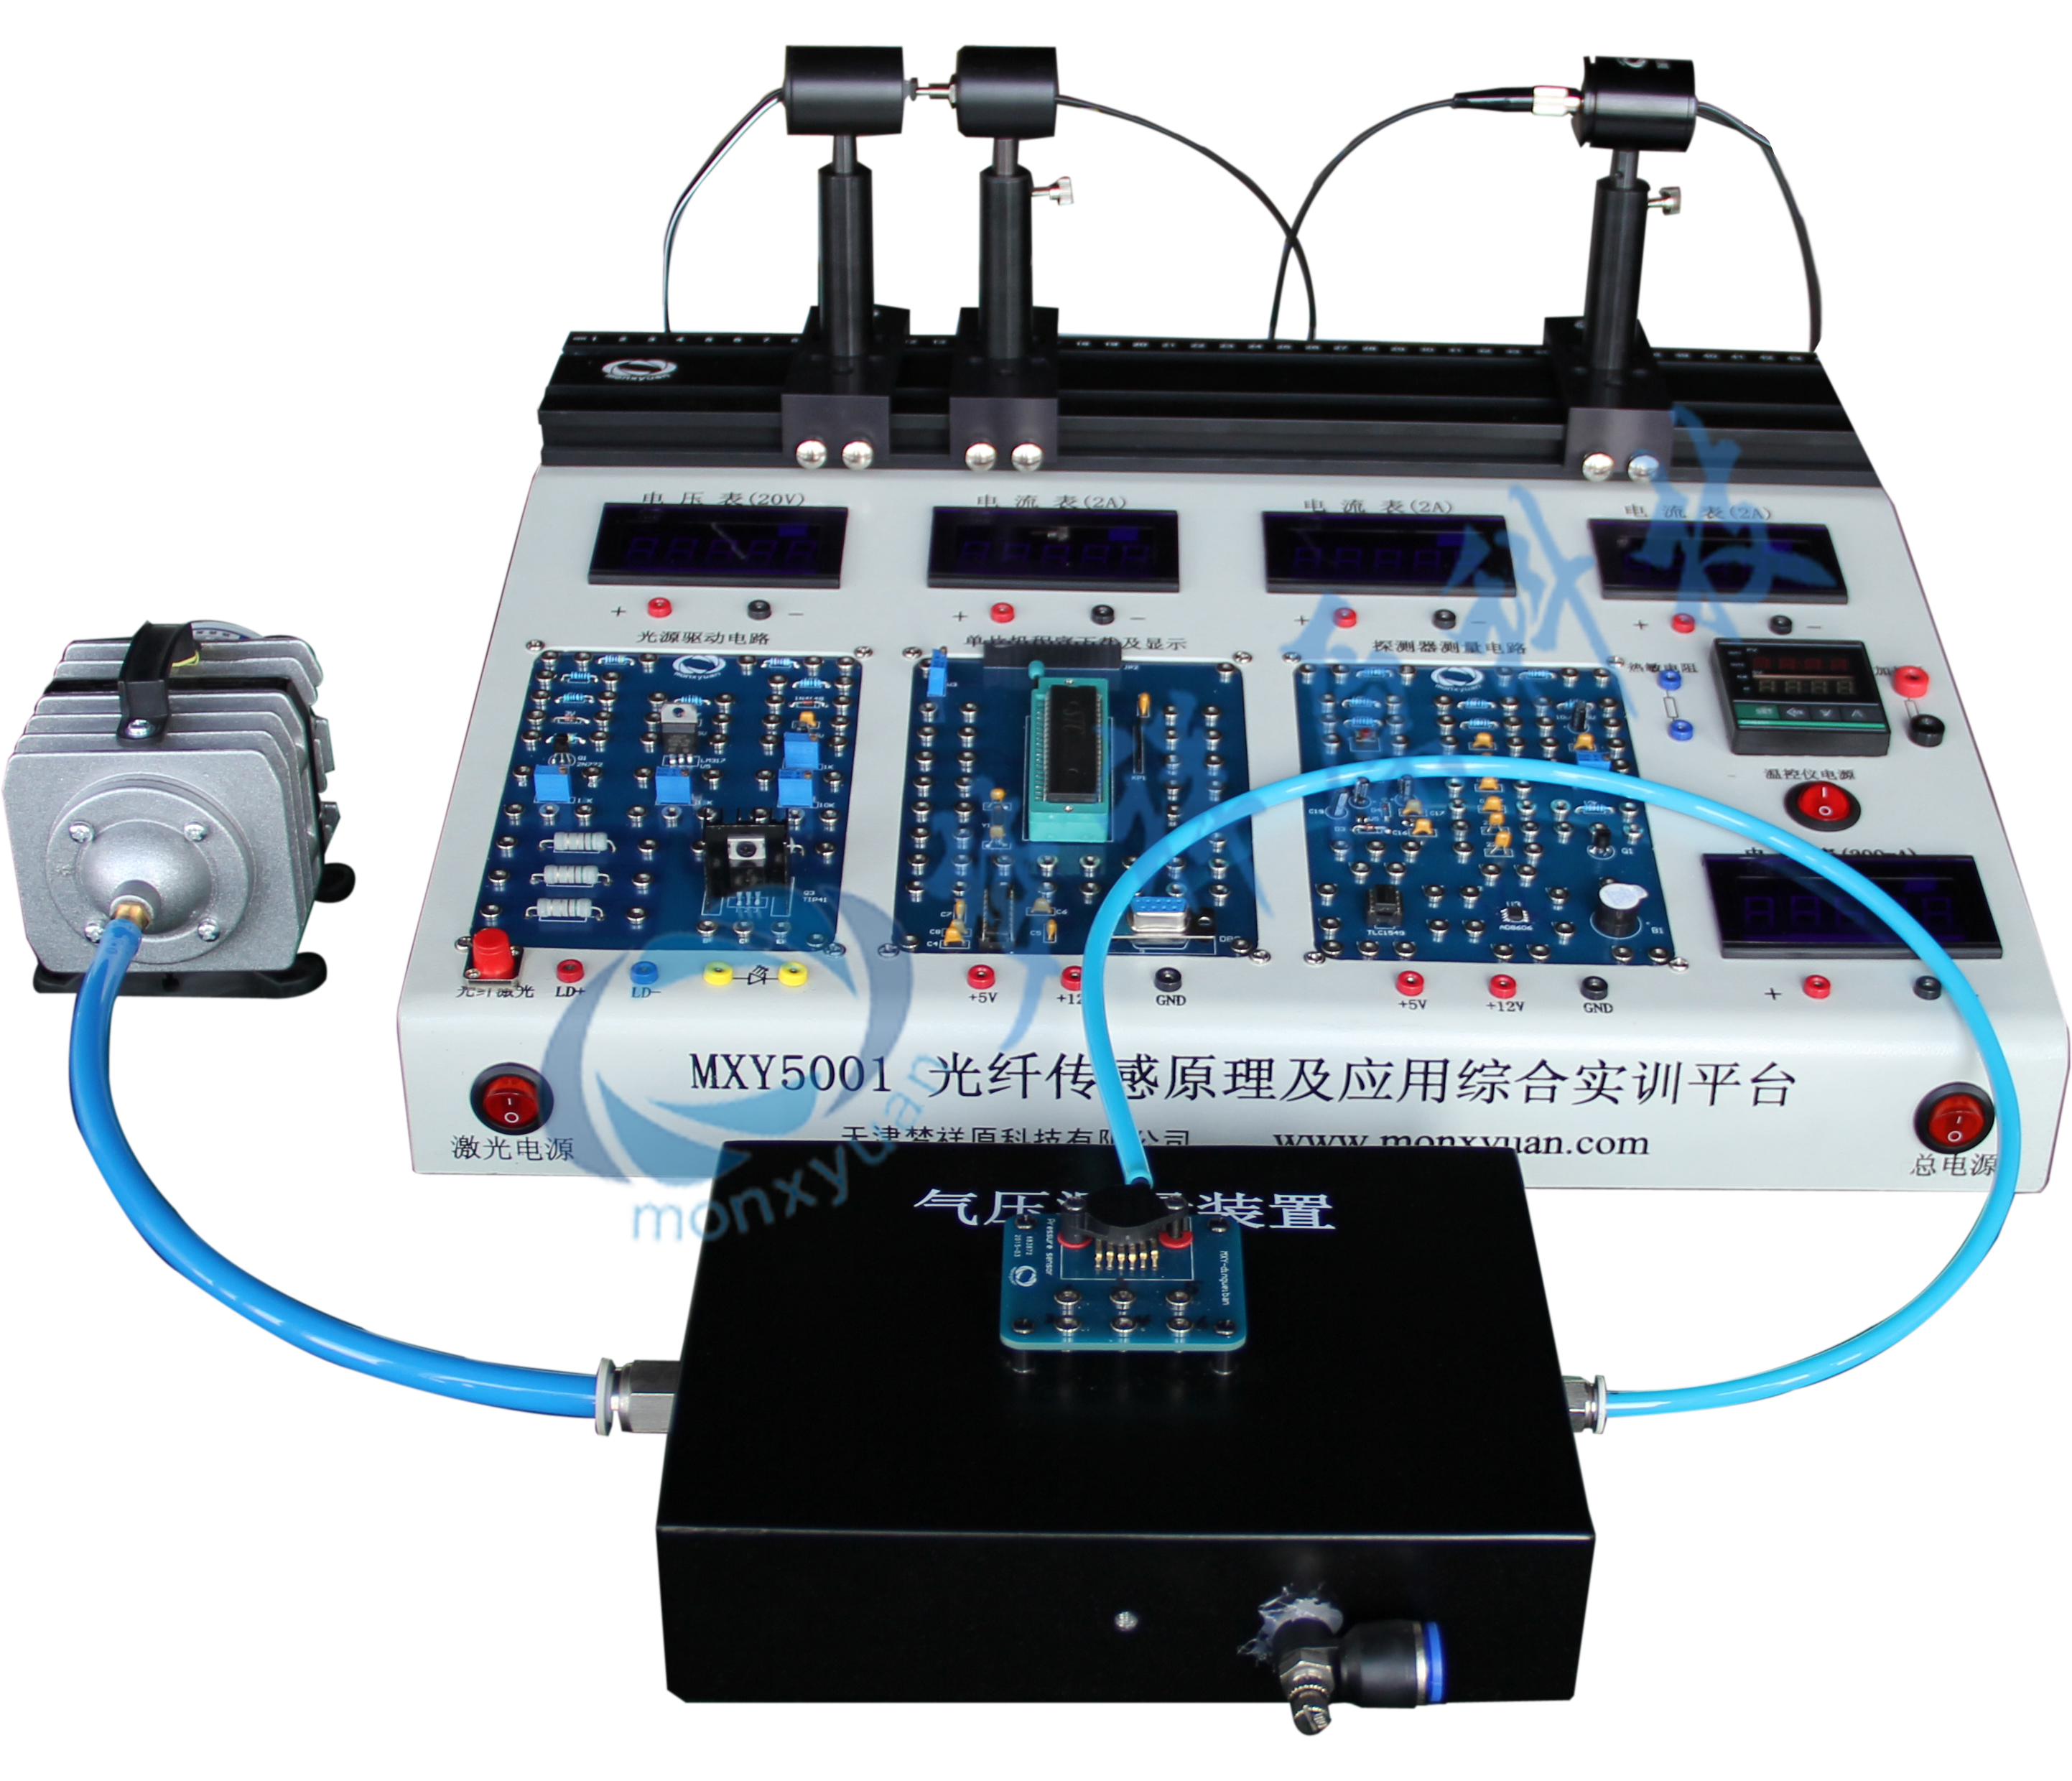 MXY5001光纤传感原理及应用综合实训平台